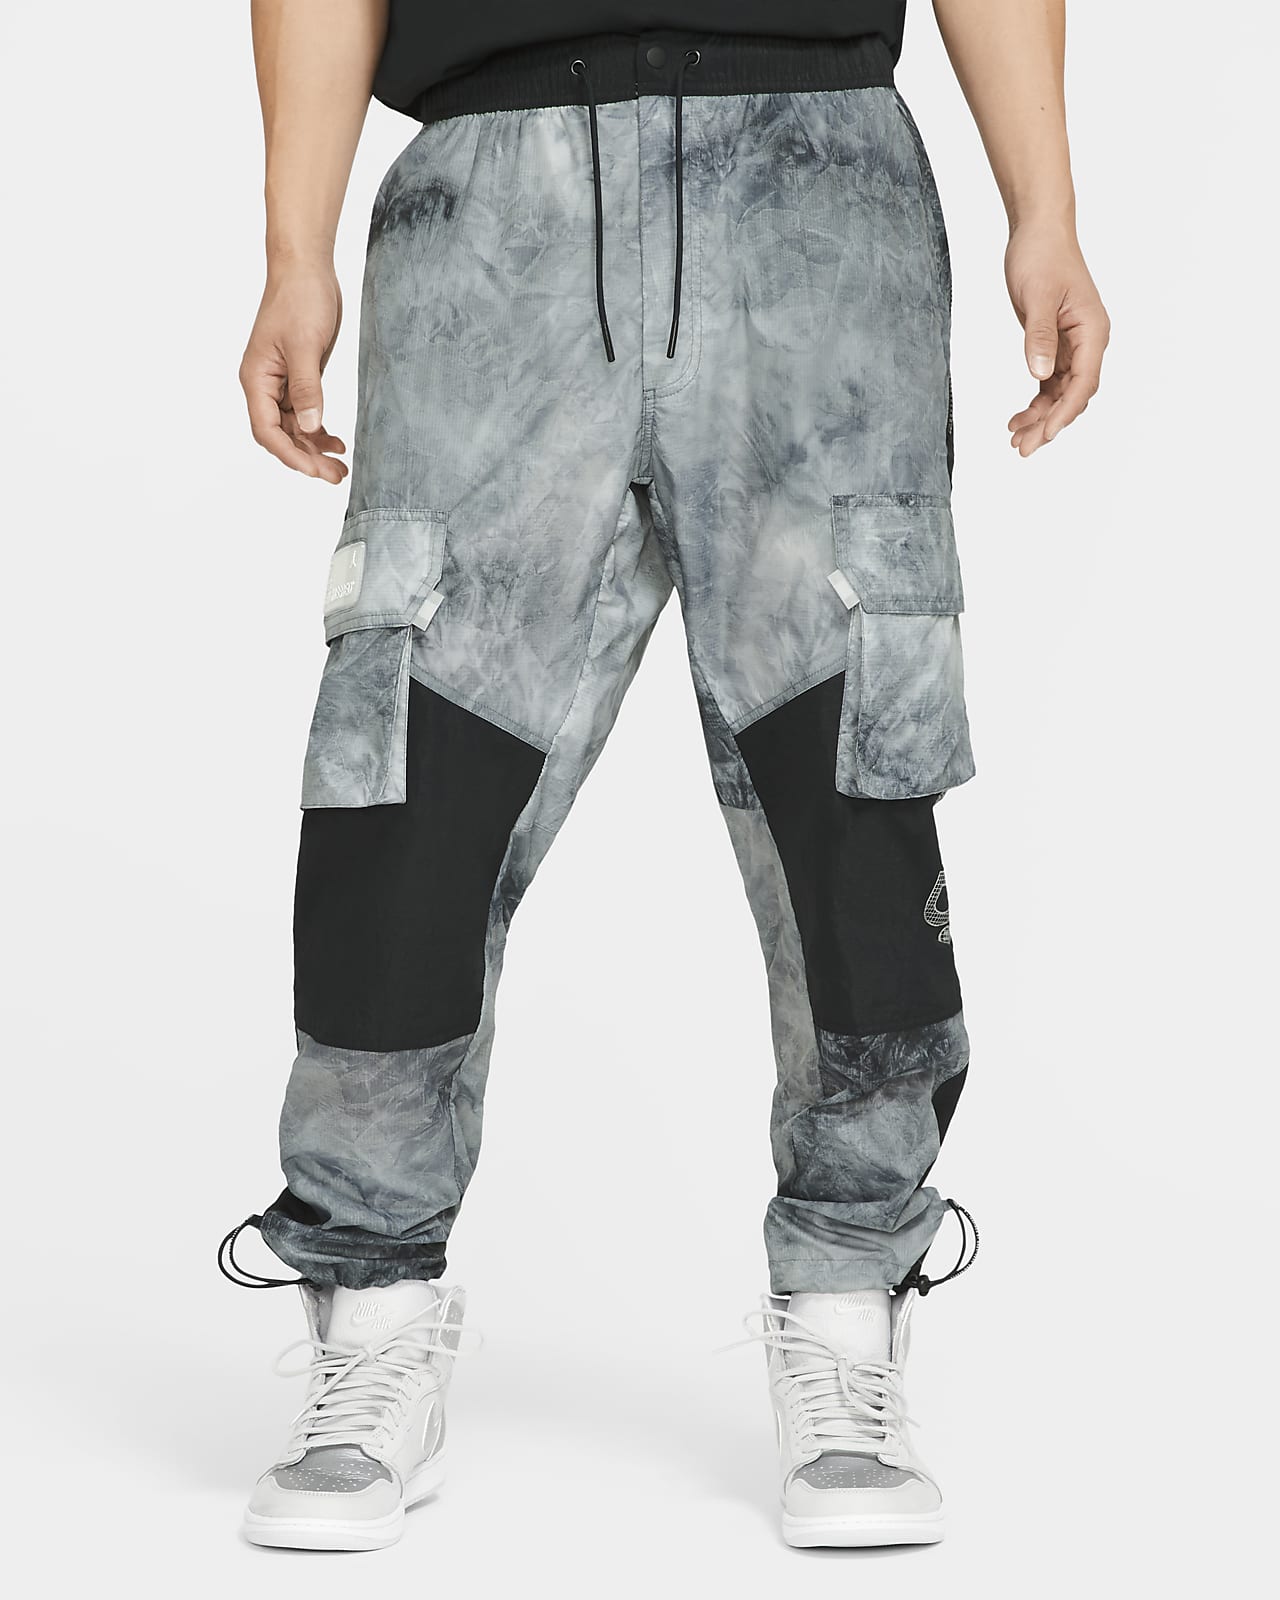 Printed Cargo Pants. Nike JP